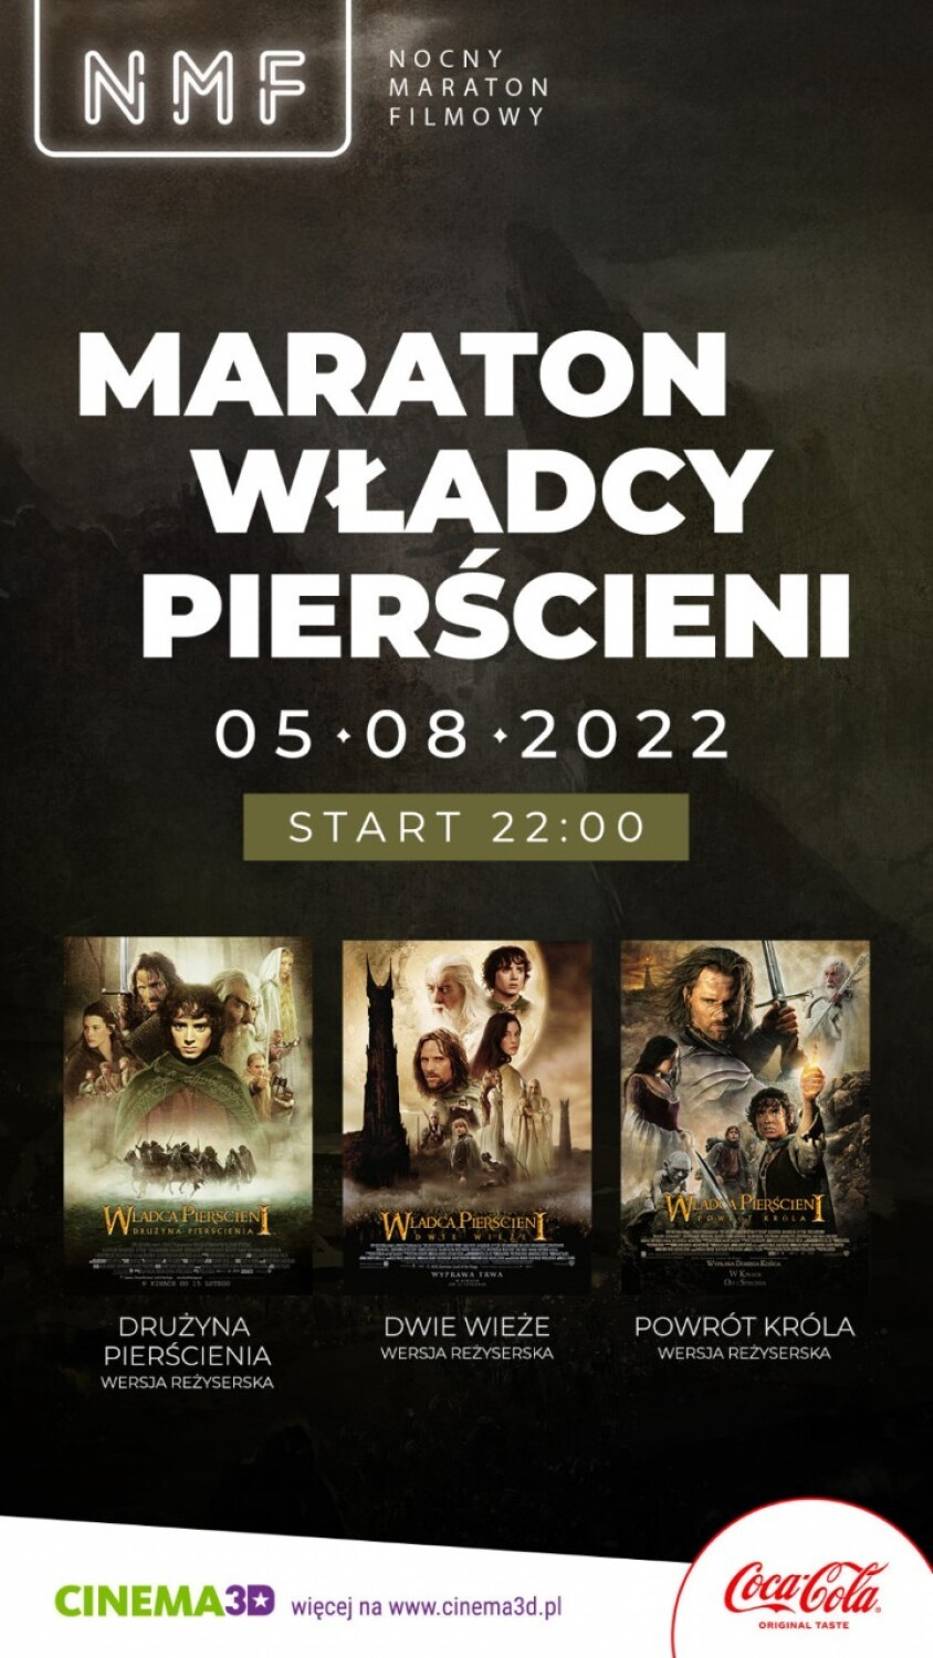 Maraton Władcy Pierścieni w Głogowie